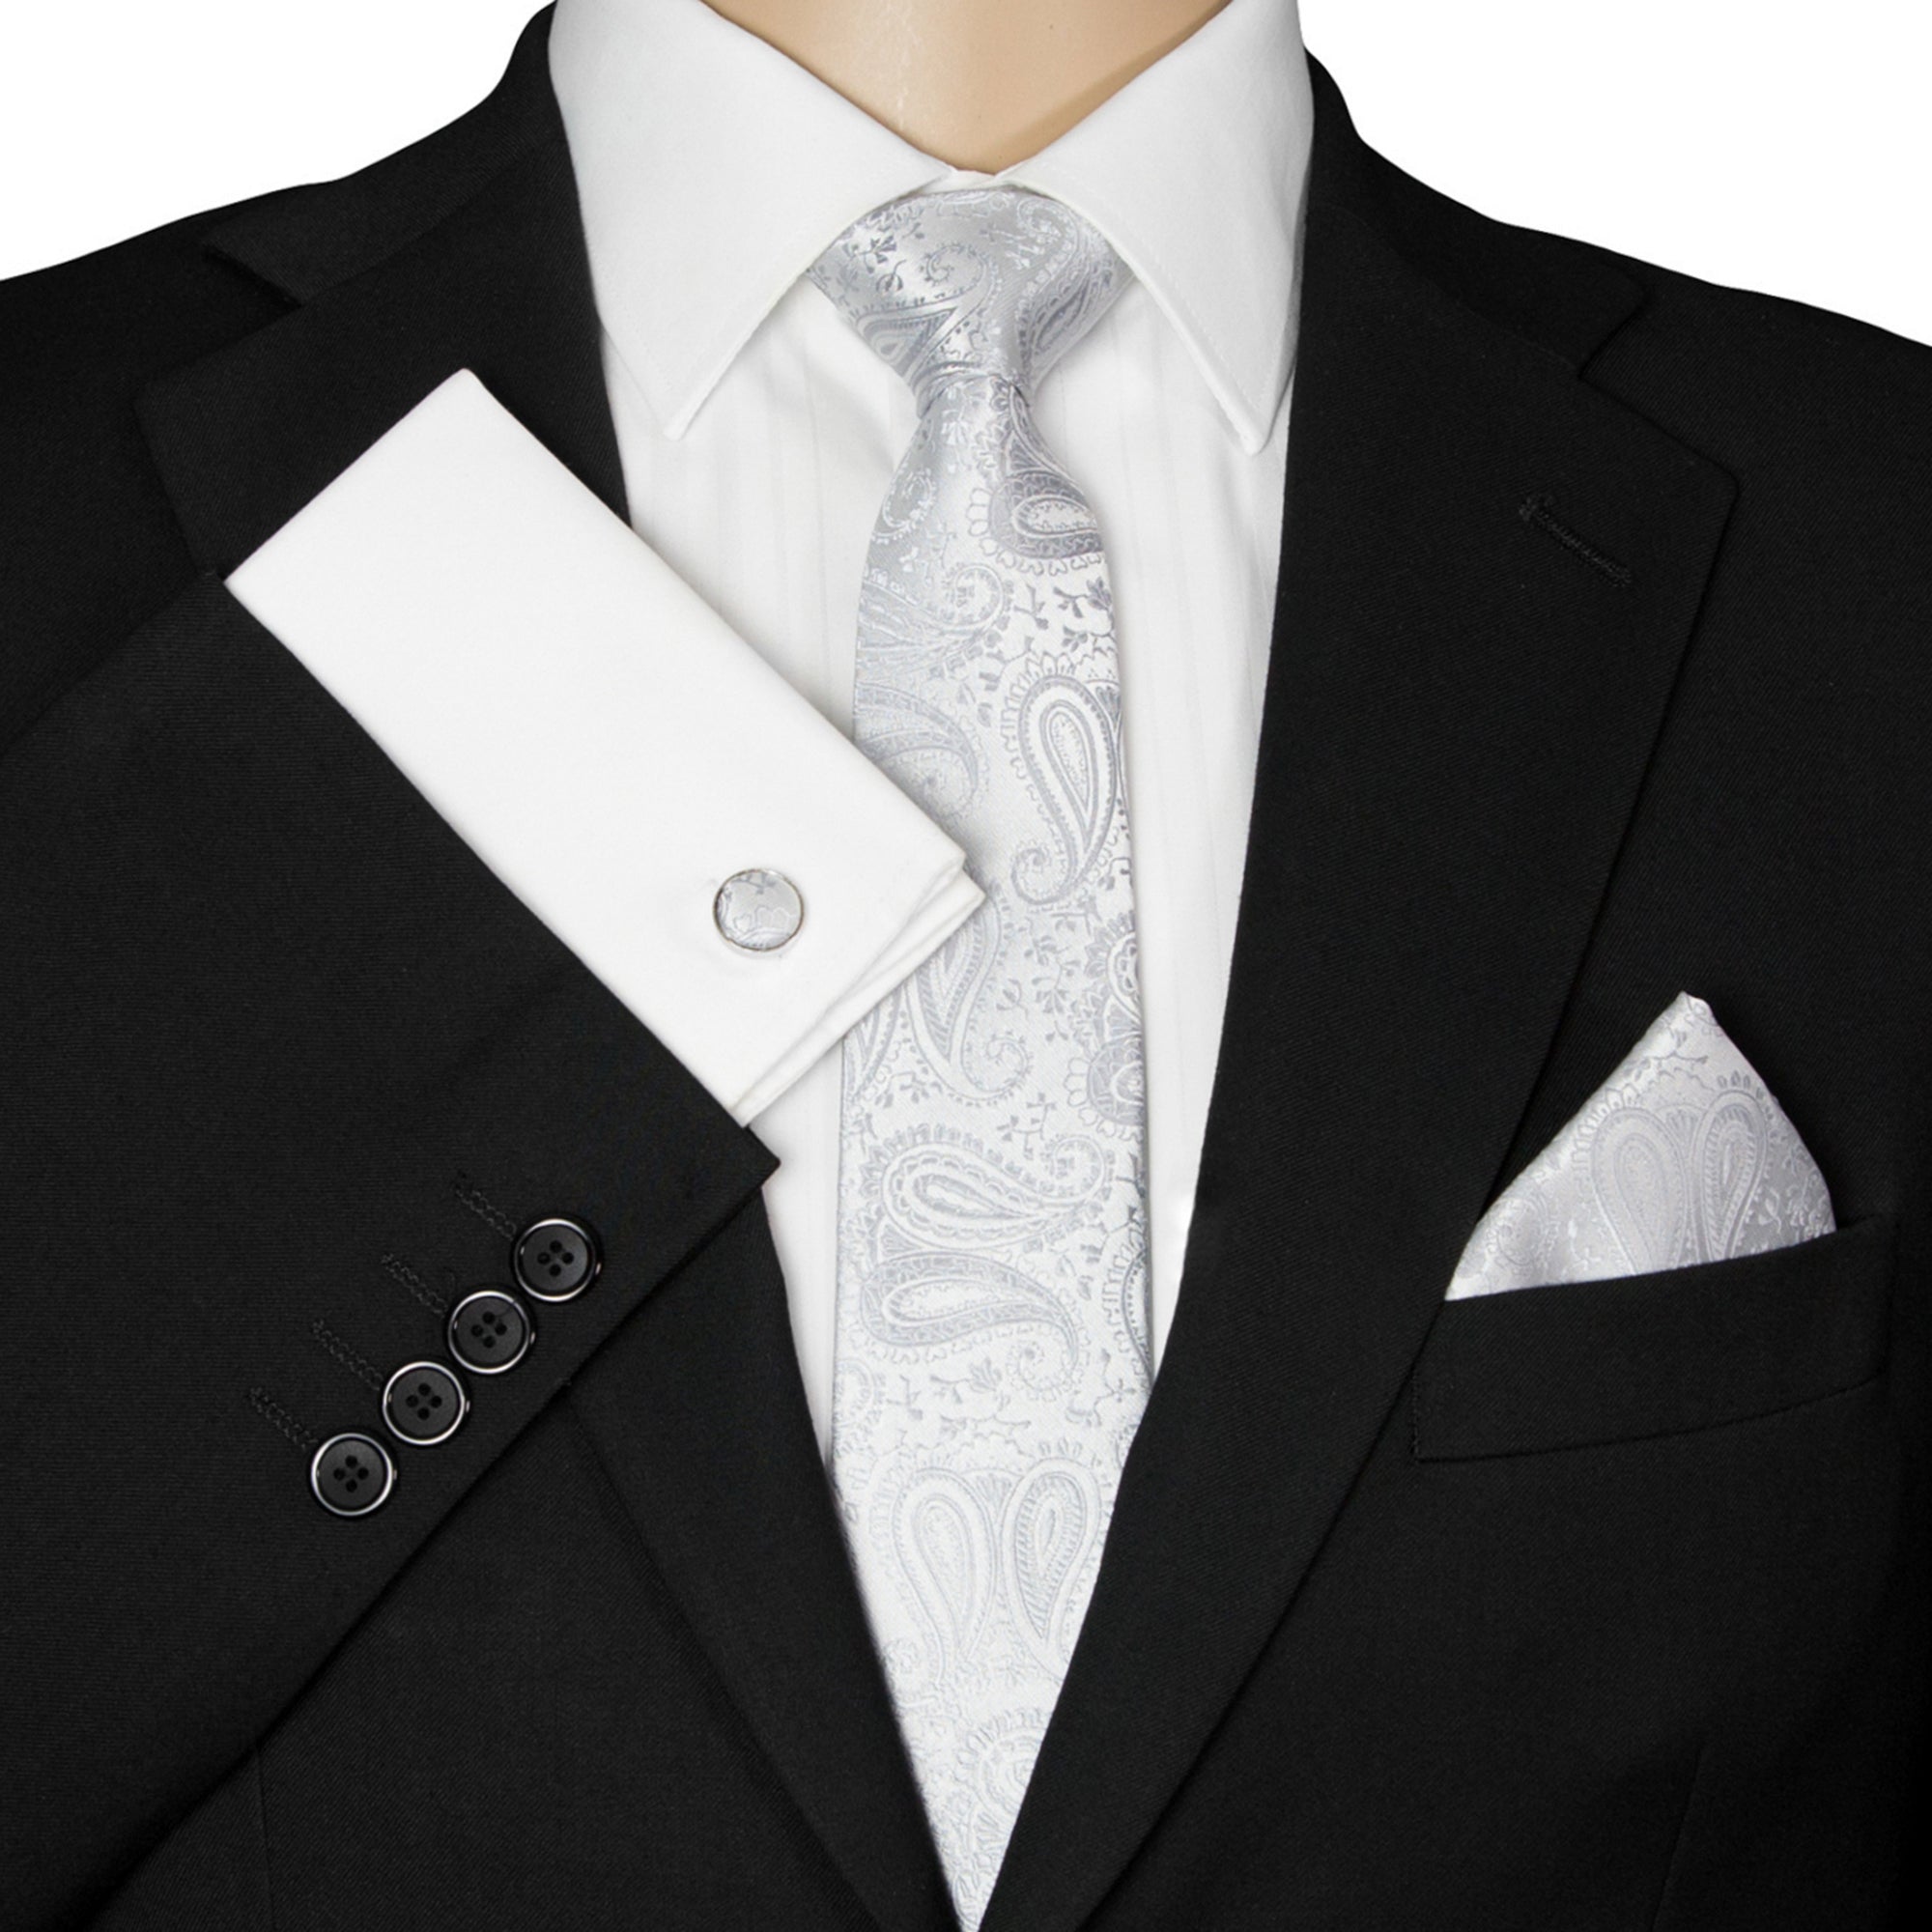 Paisley-Krawatte Silber-Graue GASSANI | - Sie für Krawatten GASSANIshop.de Designt Kaufen